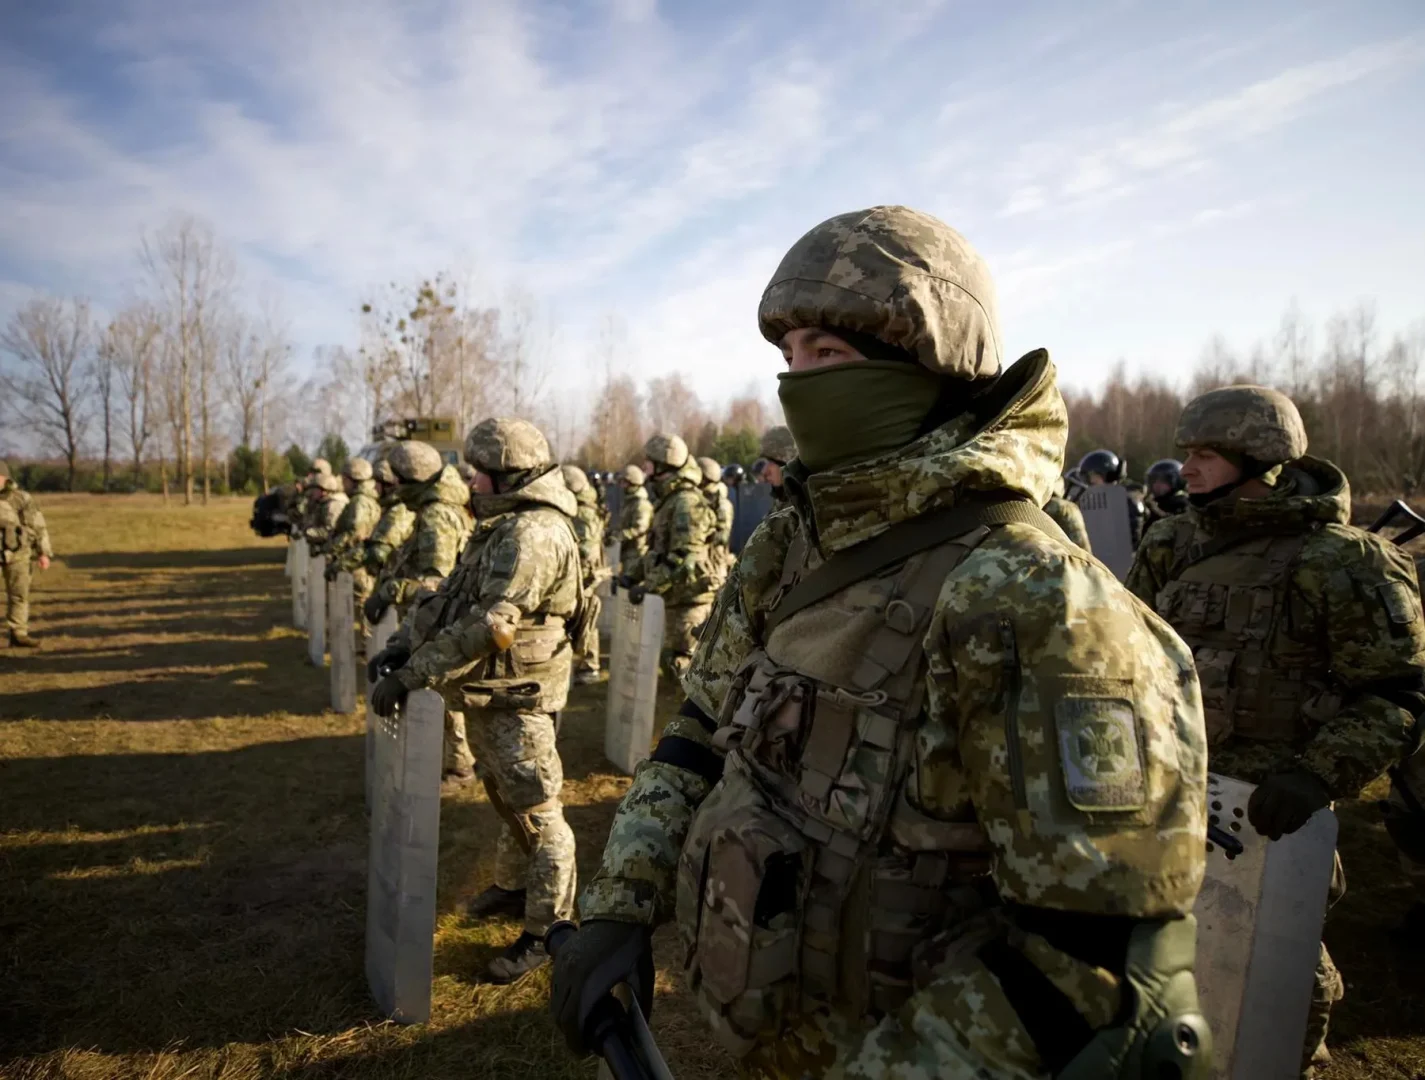 "بوليتيكو": فرنسا تعتزم إنشاء تحالف من الدول المستعدة لإرسال قوات إلى أوكرانيا